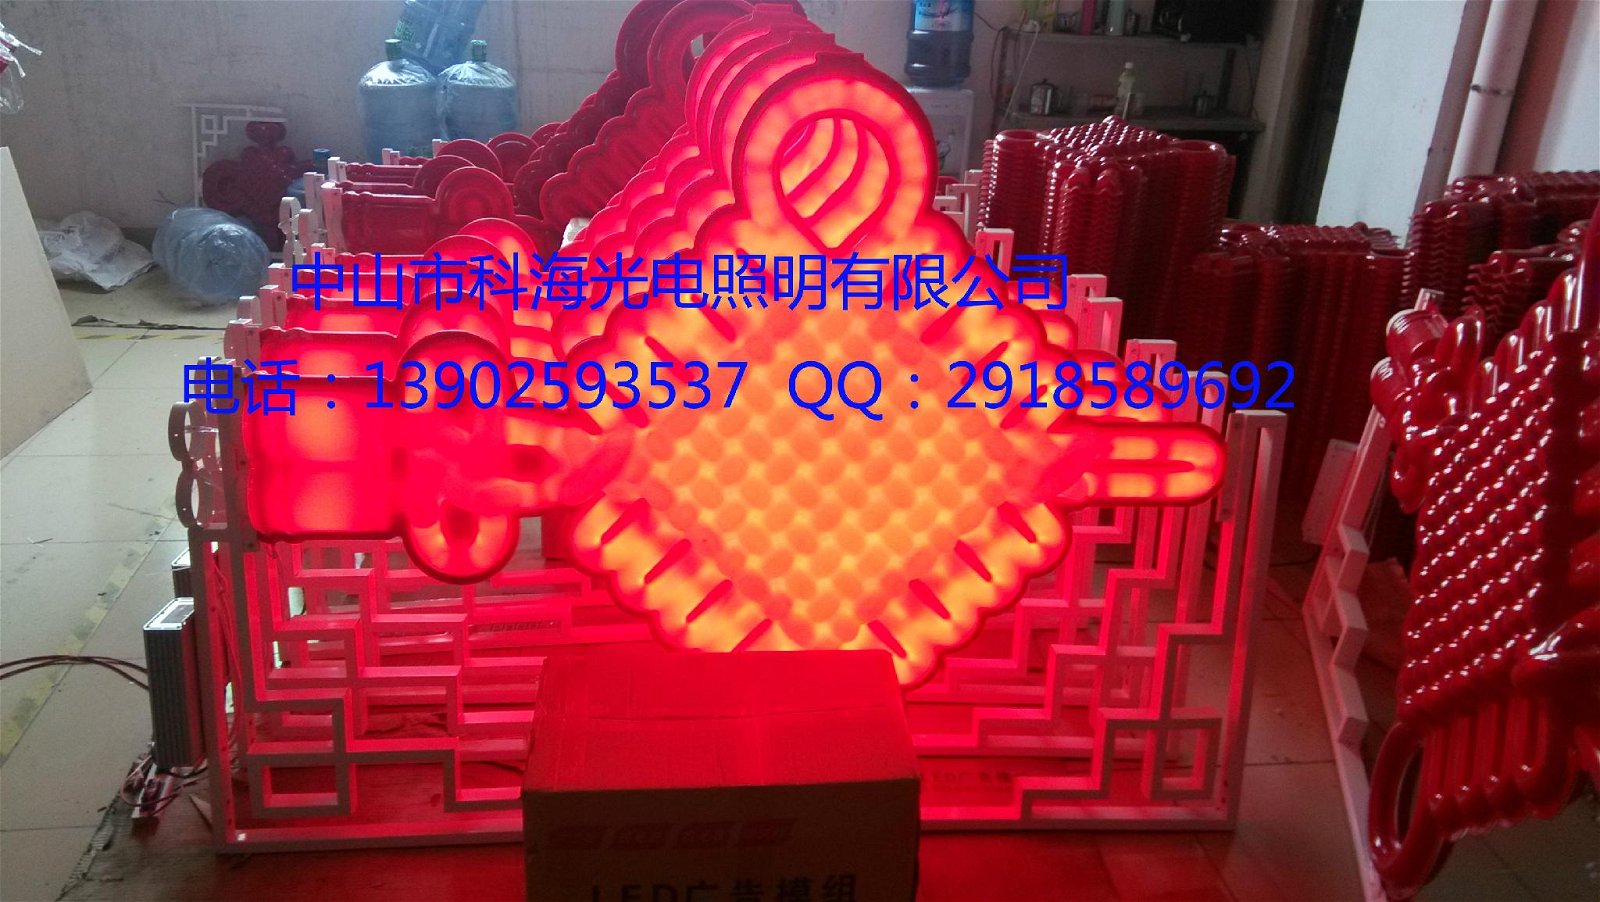 2.3米LED中国结广东led中国结厂家 5